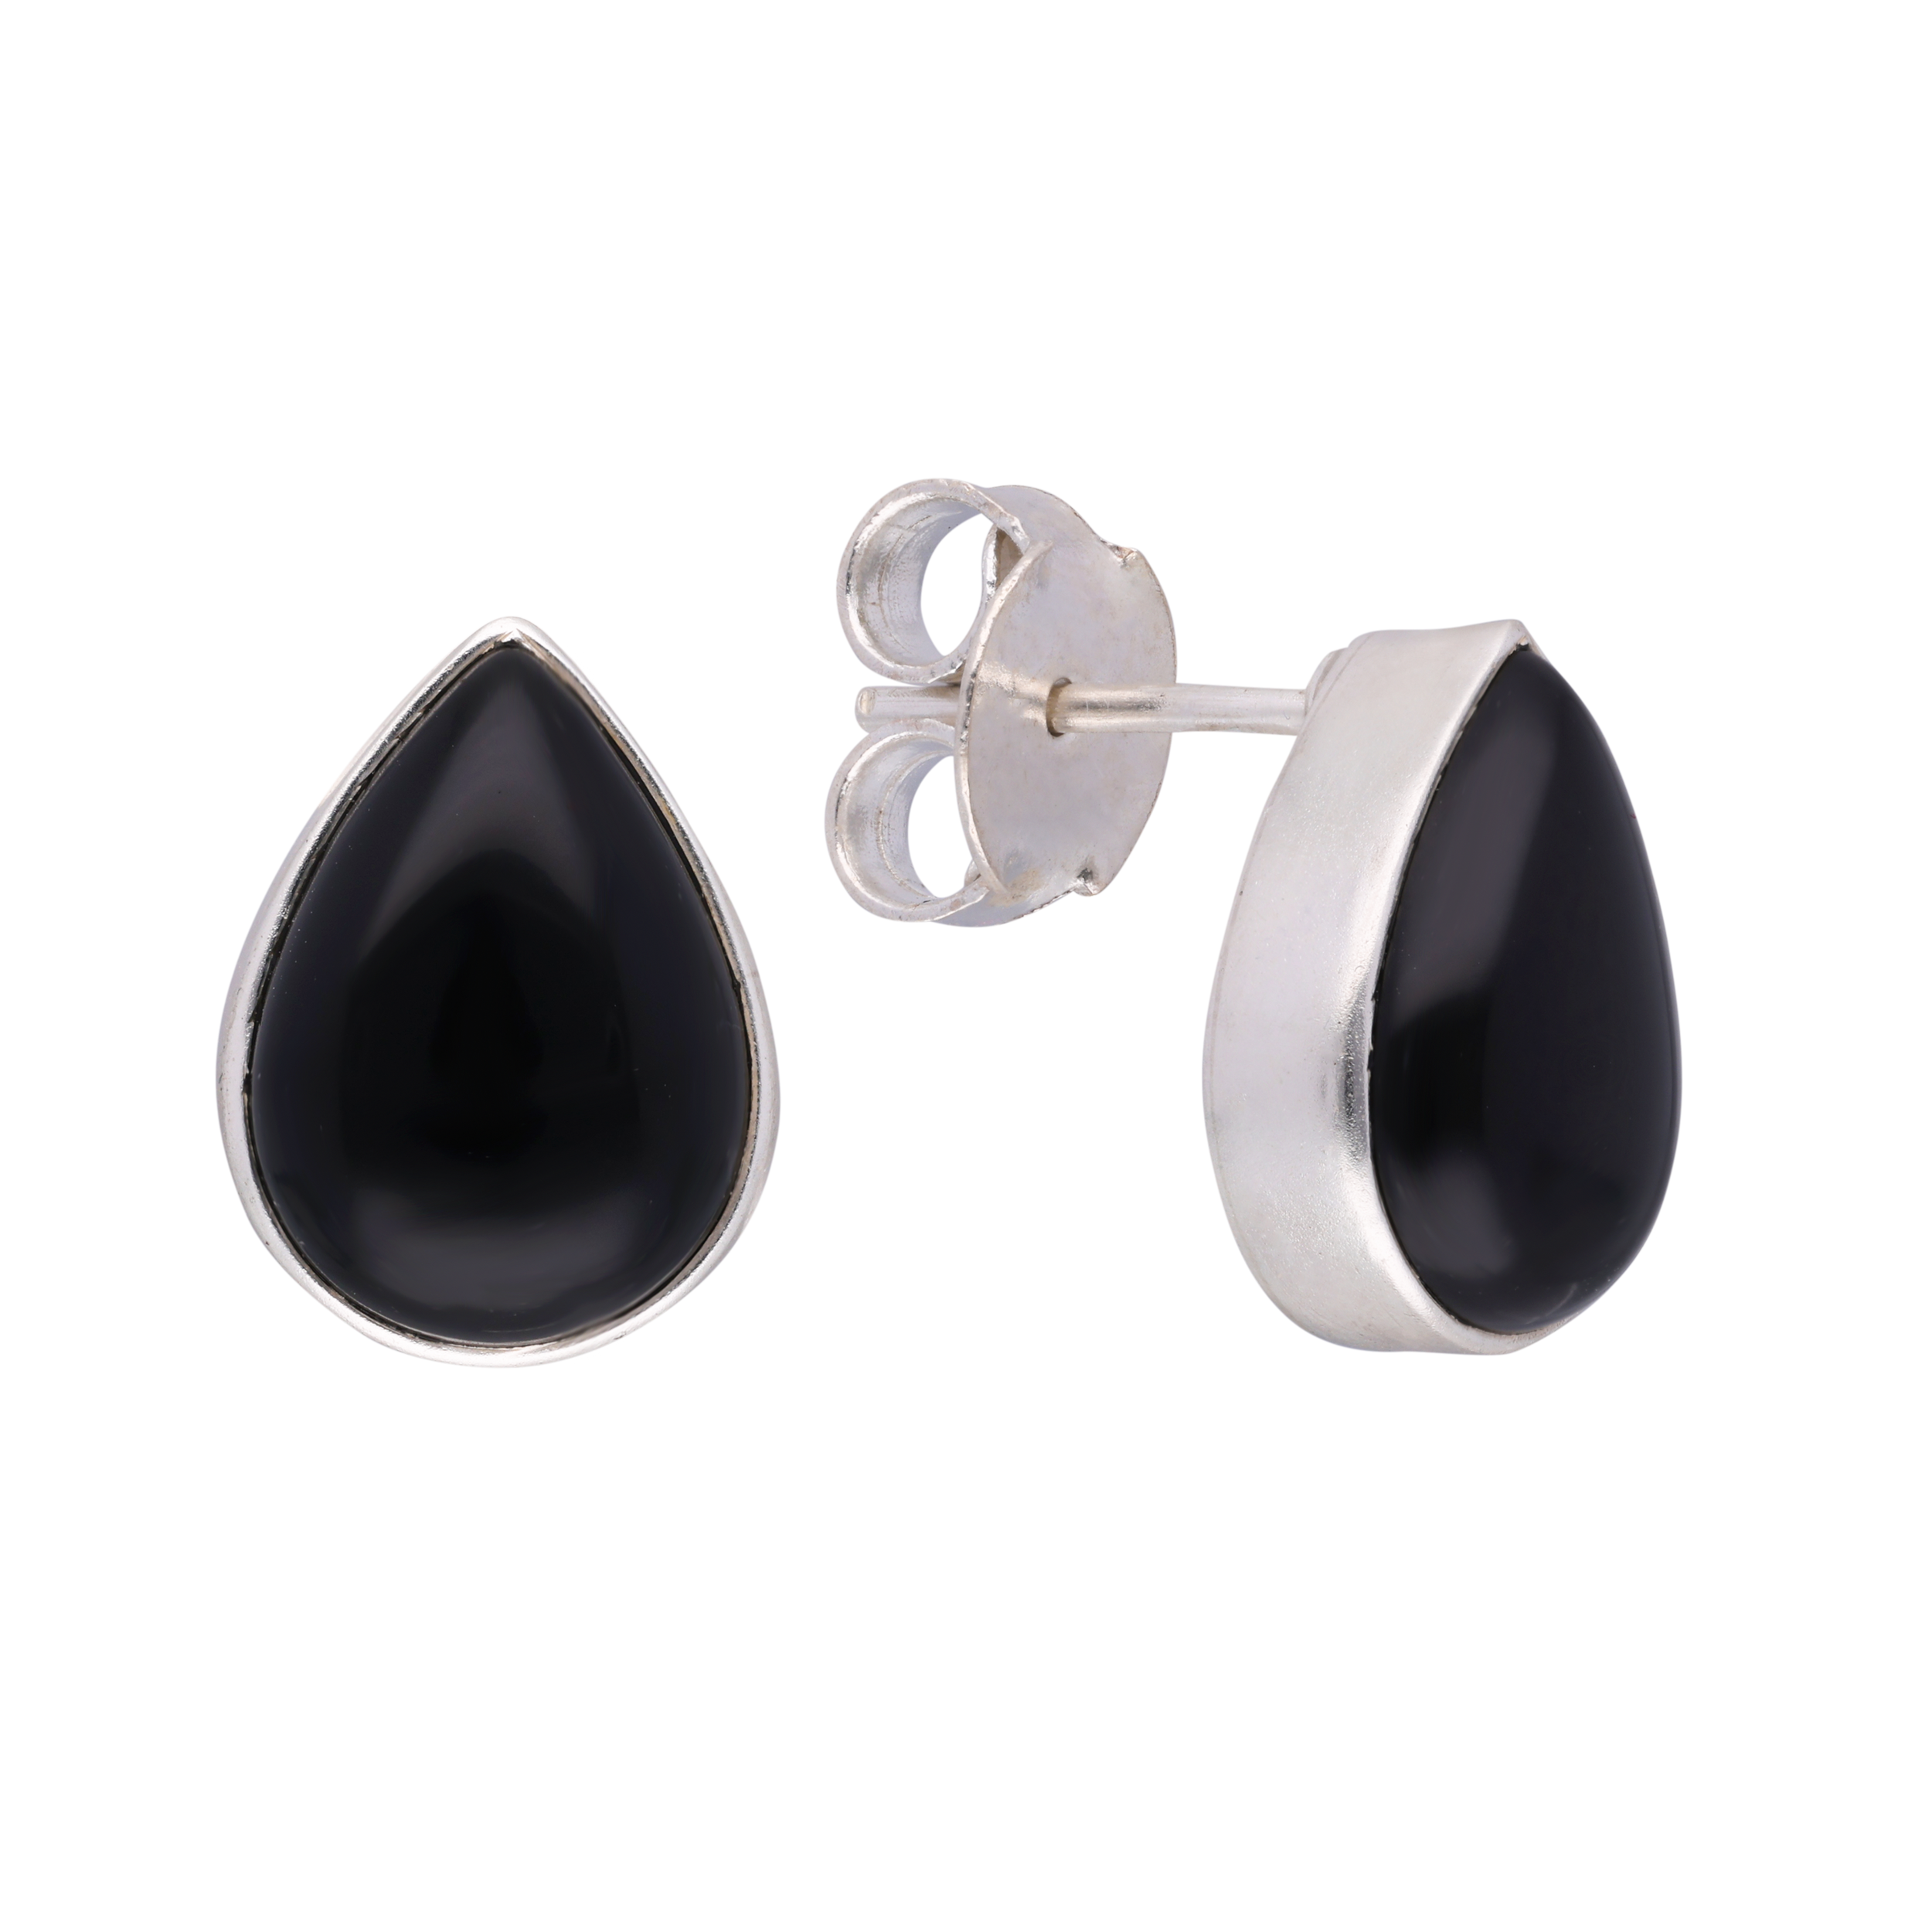 Sophisticated Black Teardrop Silver Tops | SKU: 0019586137, 0019586038, 0019585994, 0019586021, 0019585987